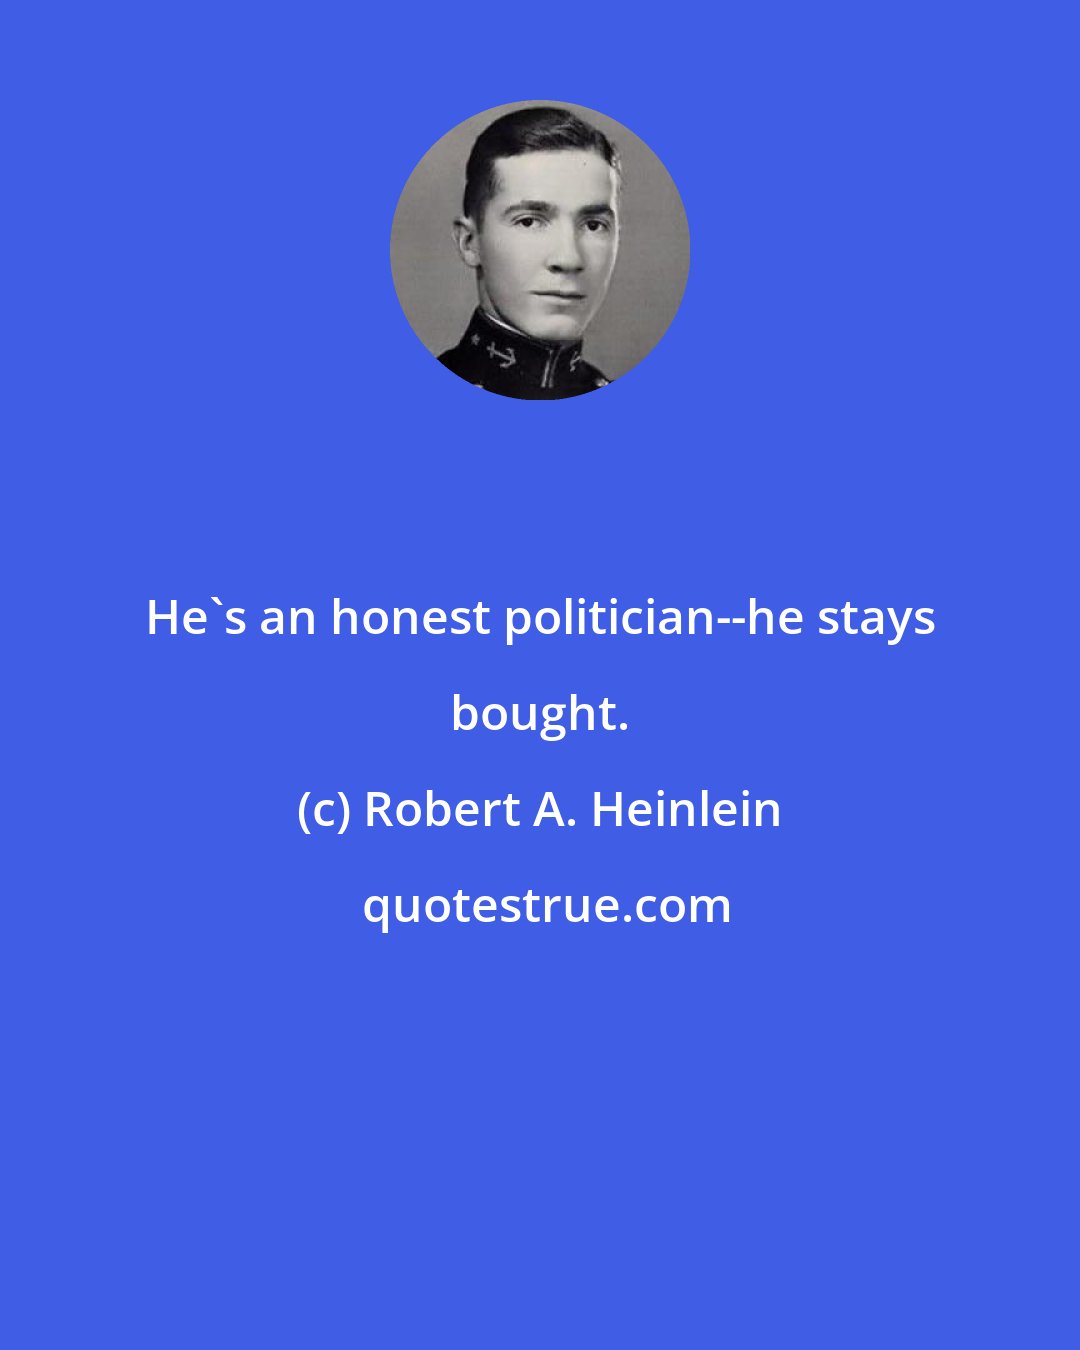 Robert A. Heinlein: He's an honest politician--he stays bought.